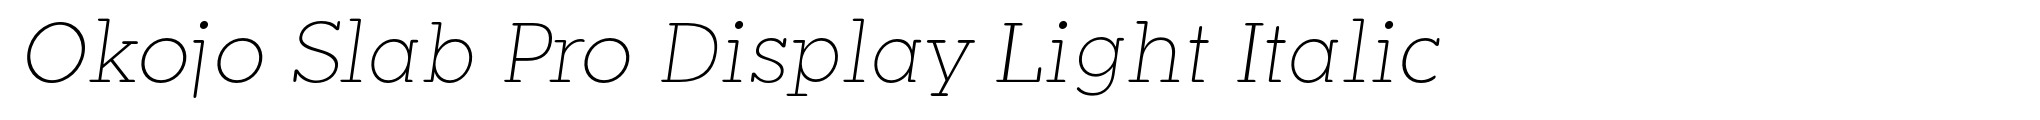 Okojo Slab Pro Display Light Italic image